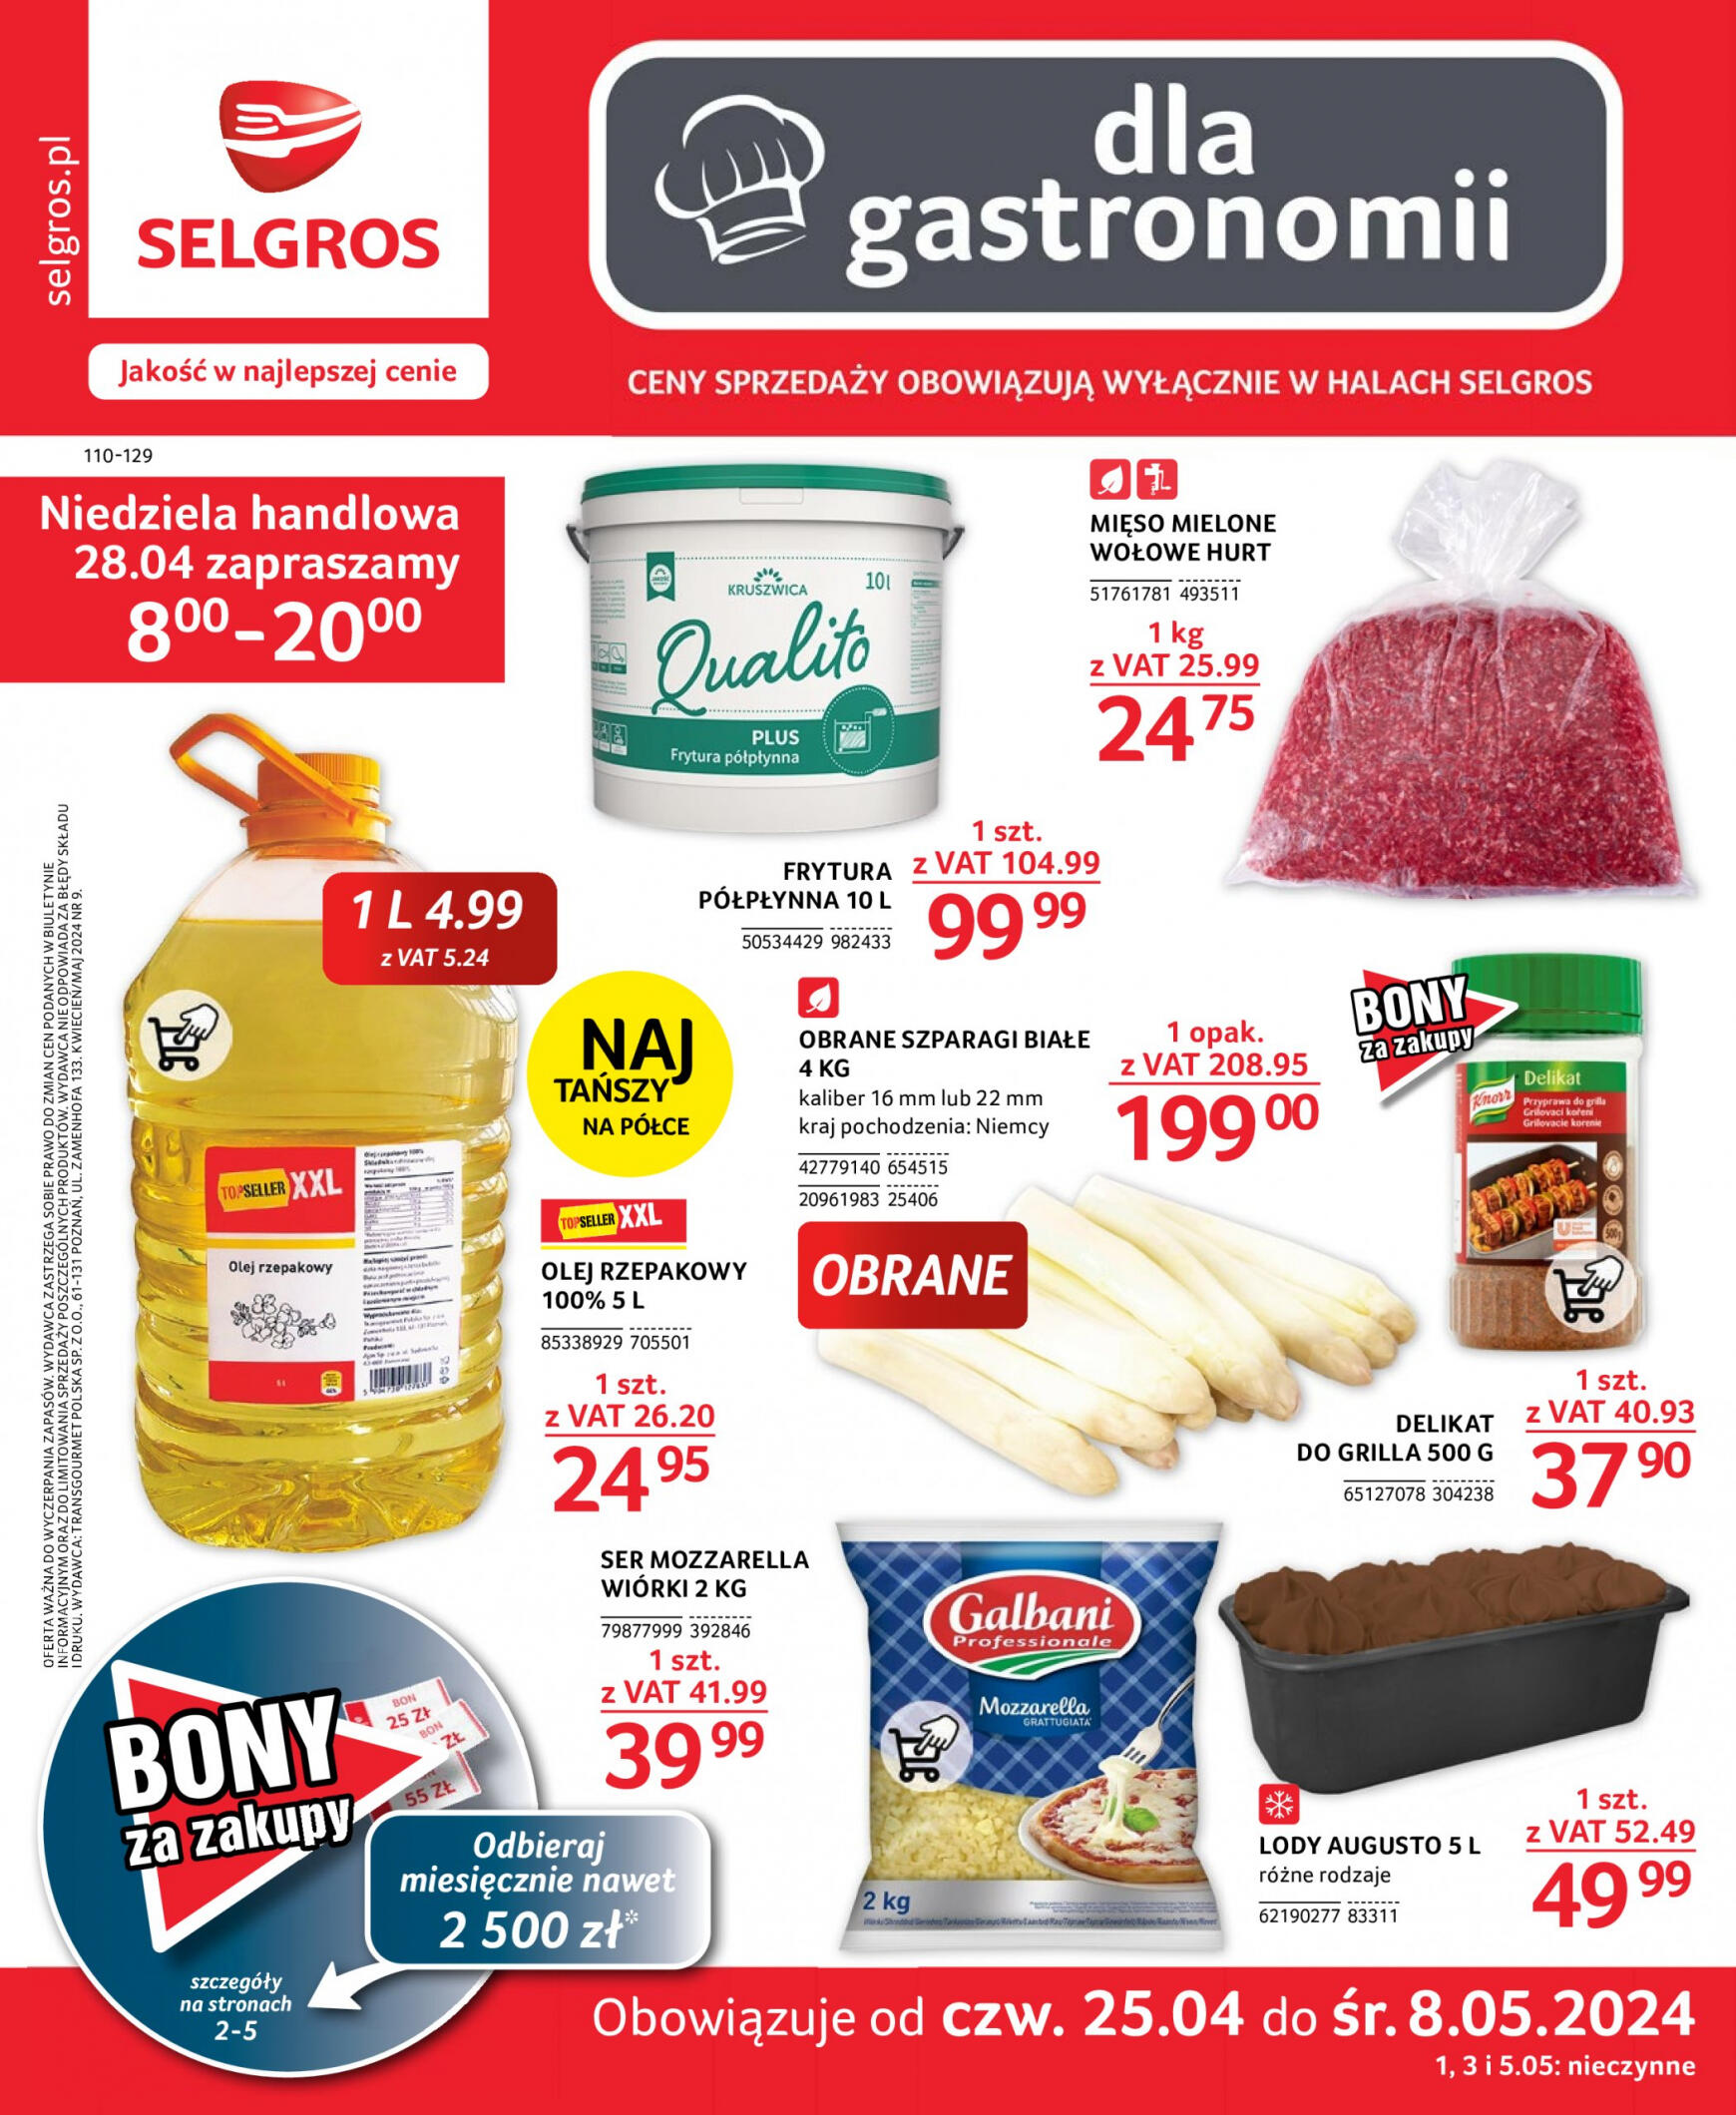 selgros - Selgros cash&carry - Oferta Gastronomia gazetka aktualna ważna od 25.04. - 08.05.